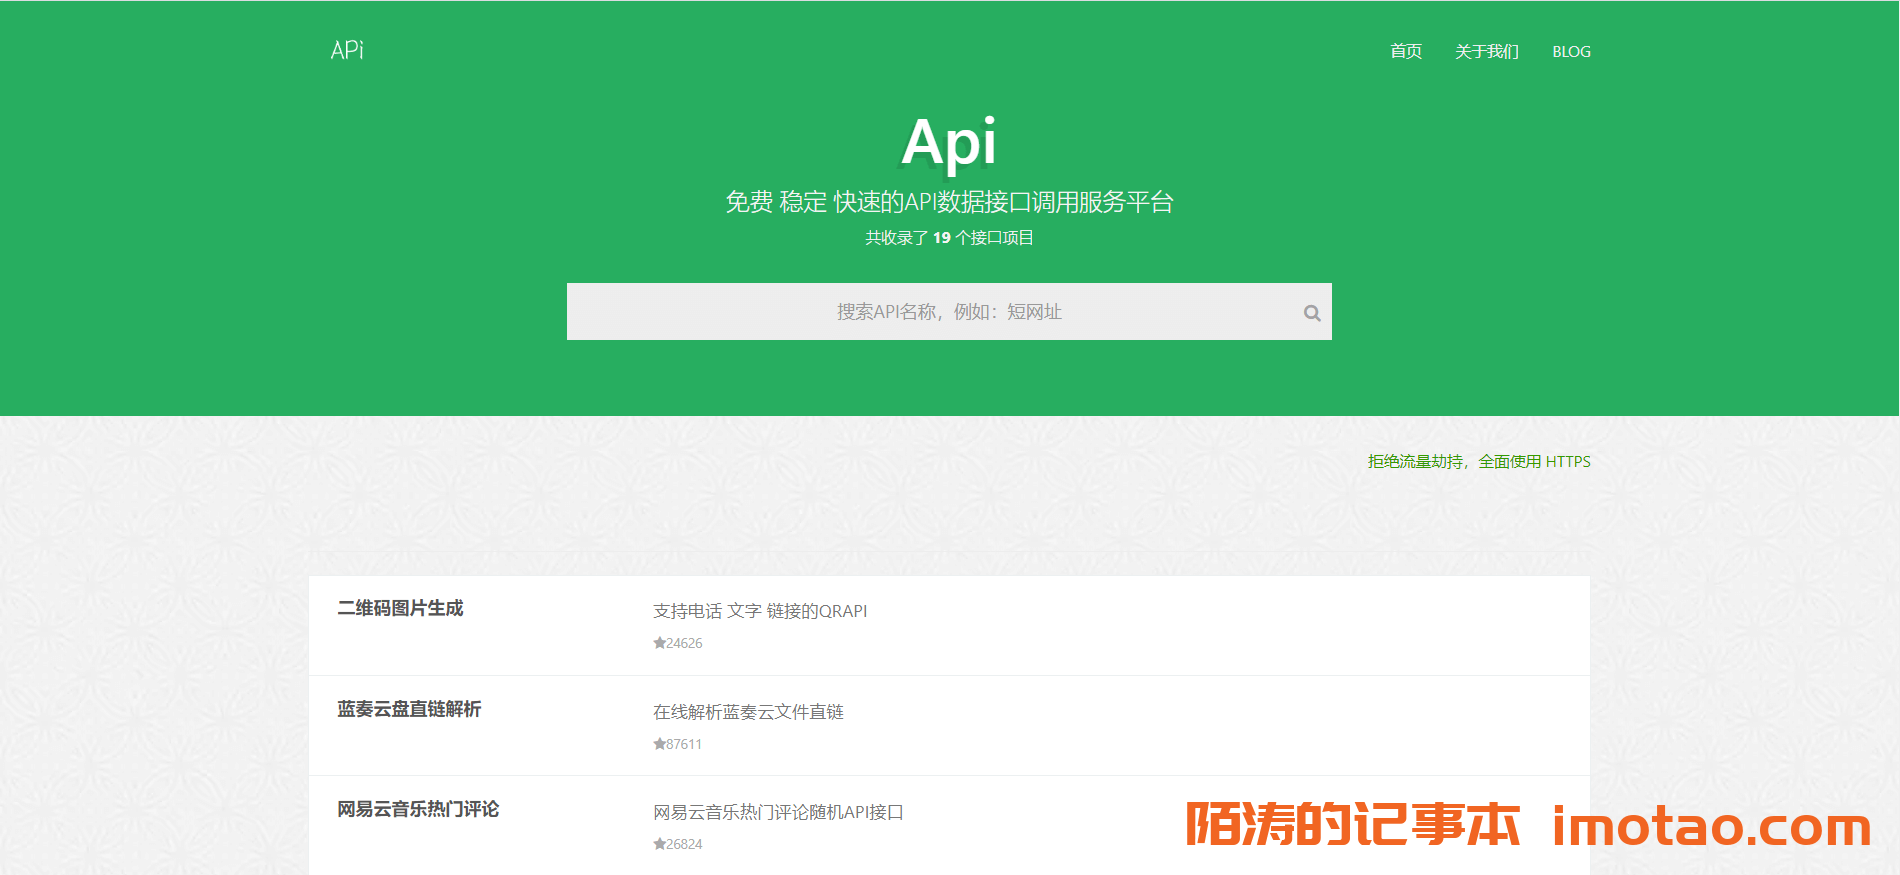 大米API完成第三次改版